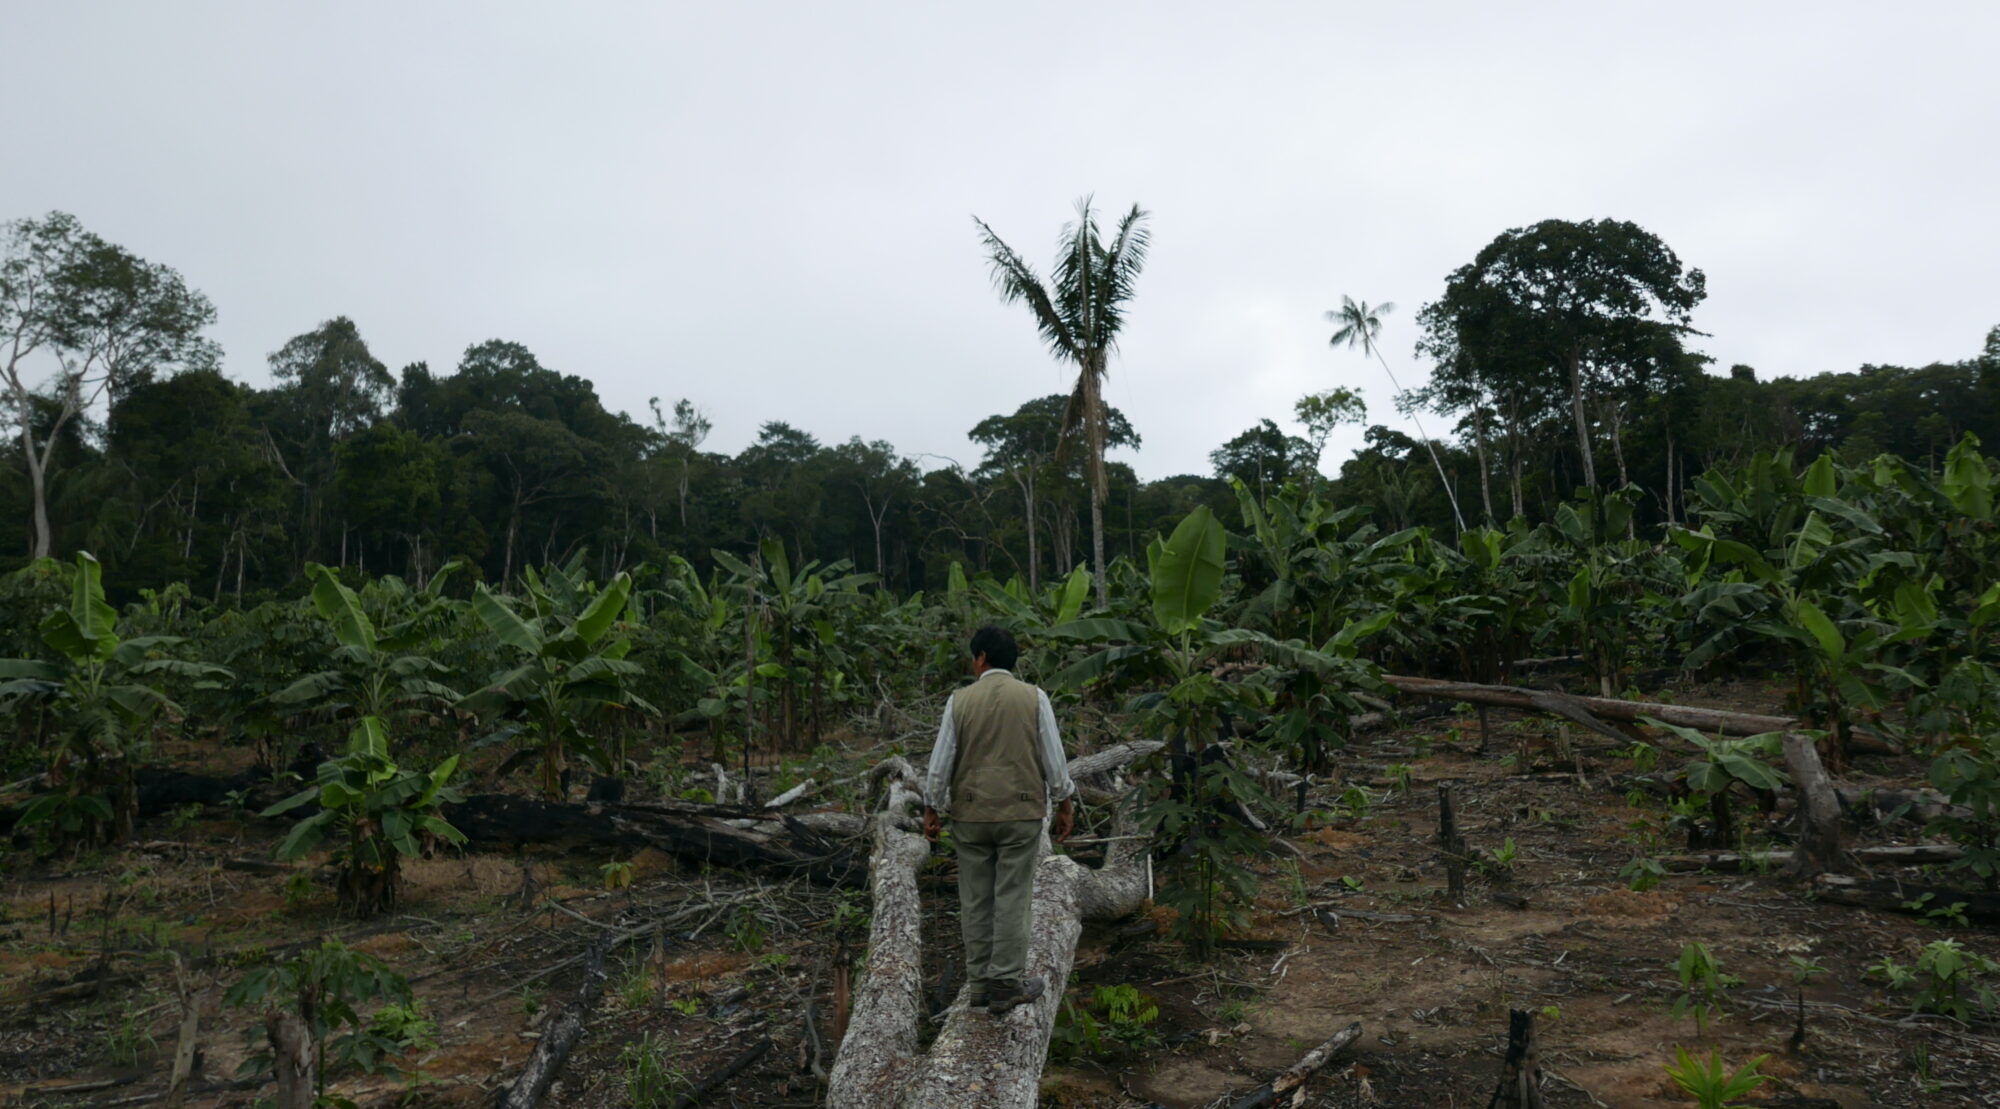 <p>Demetrio Pacheco camina por su concesión forestal en Madre de Dios, Perú, donde su hijo fue asesinado tras  casi una década de amenazas. El Acuerdo de Escazú podría aumentar la protección de los defensores medioambientales en Perú, pero el gobierno nacional aún no lo ha ratificado (Imagen: Jack Lo)</p>